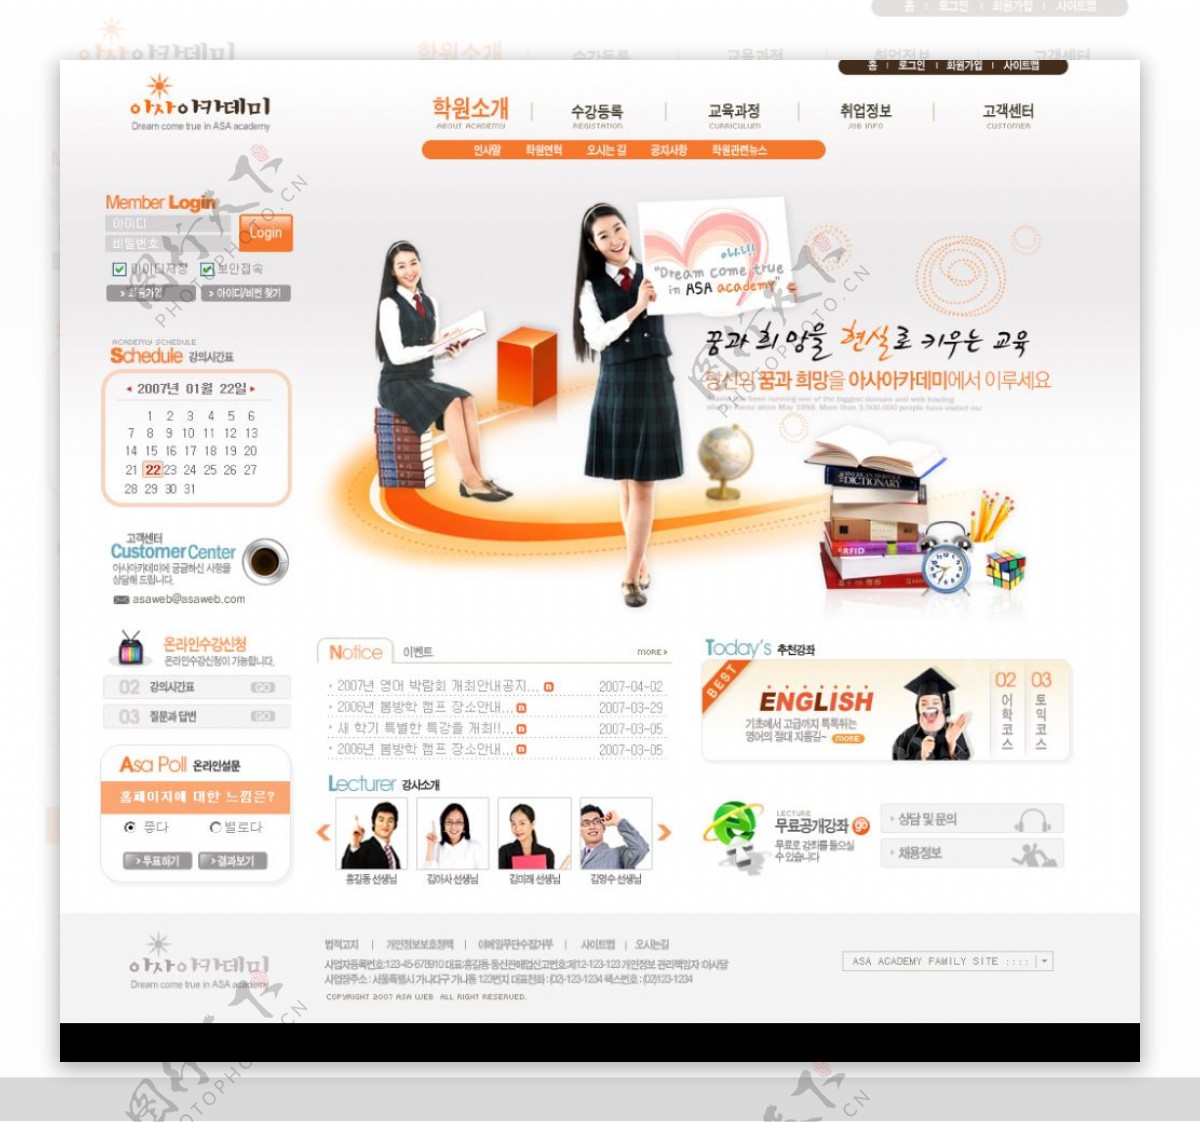 韩国桔红校园网站套装首页图片